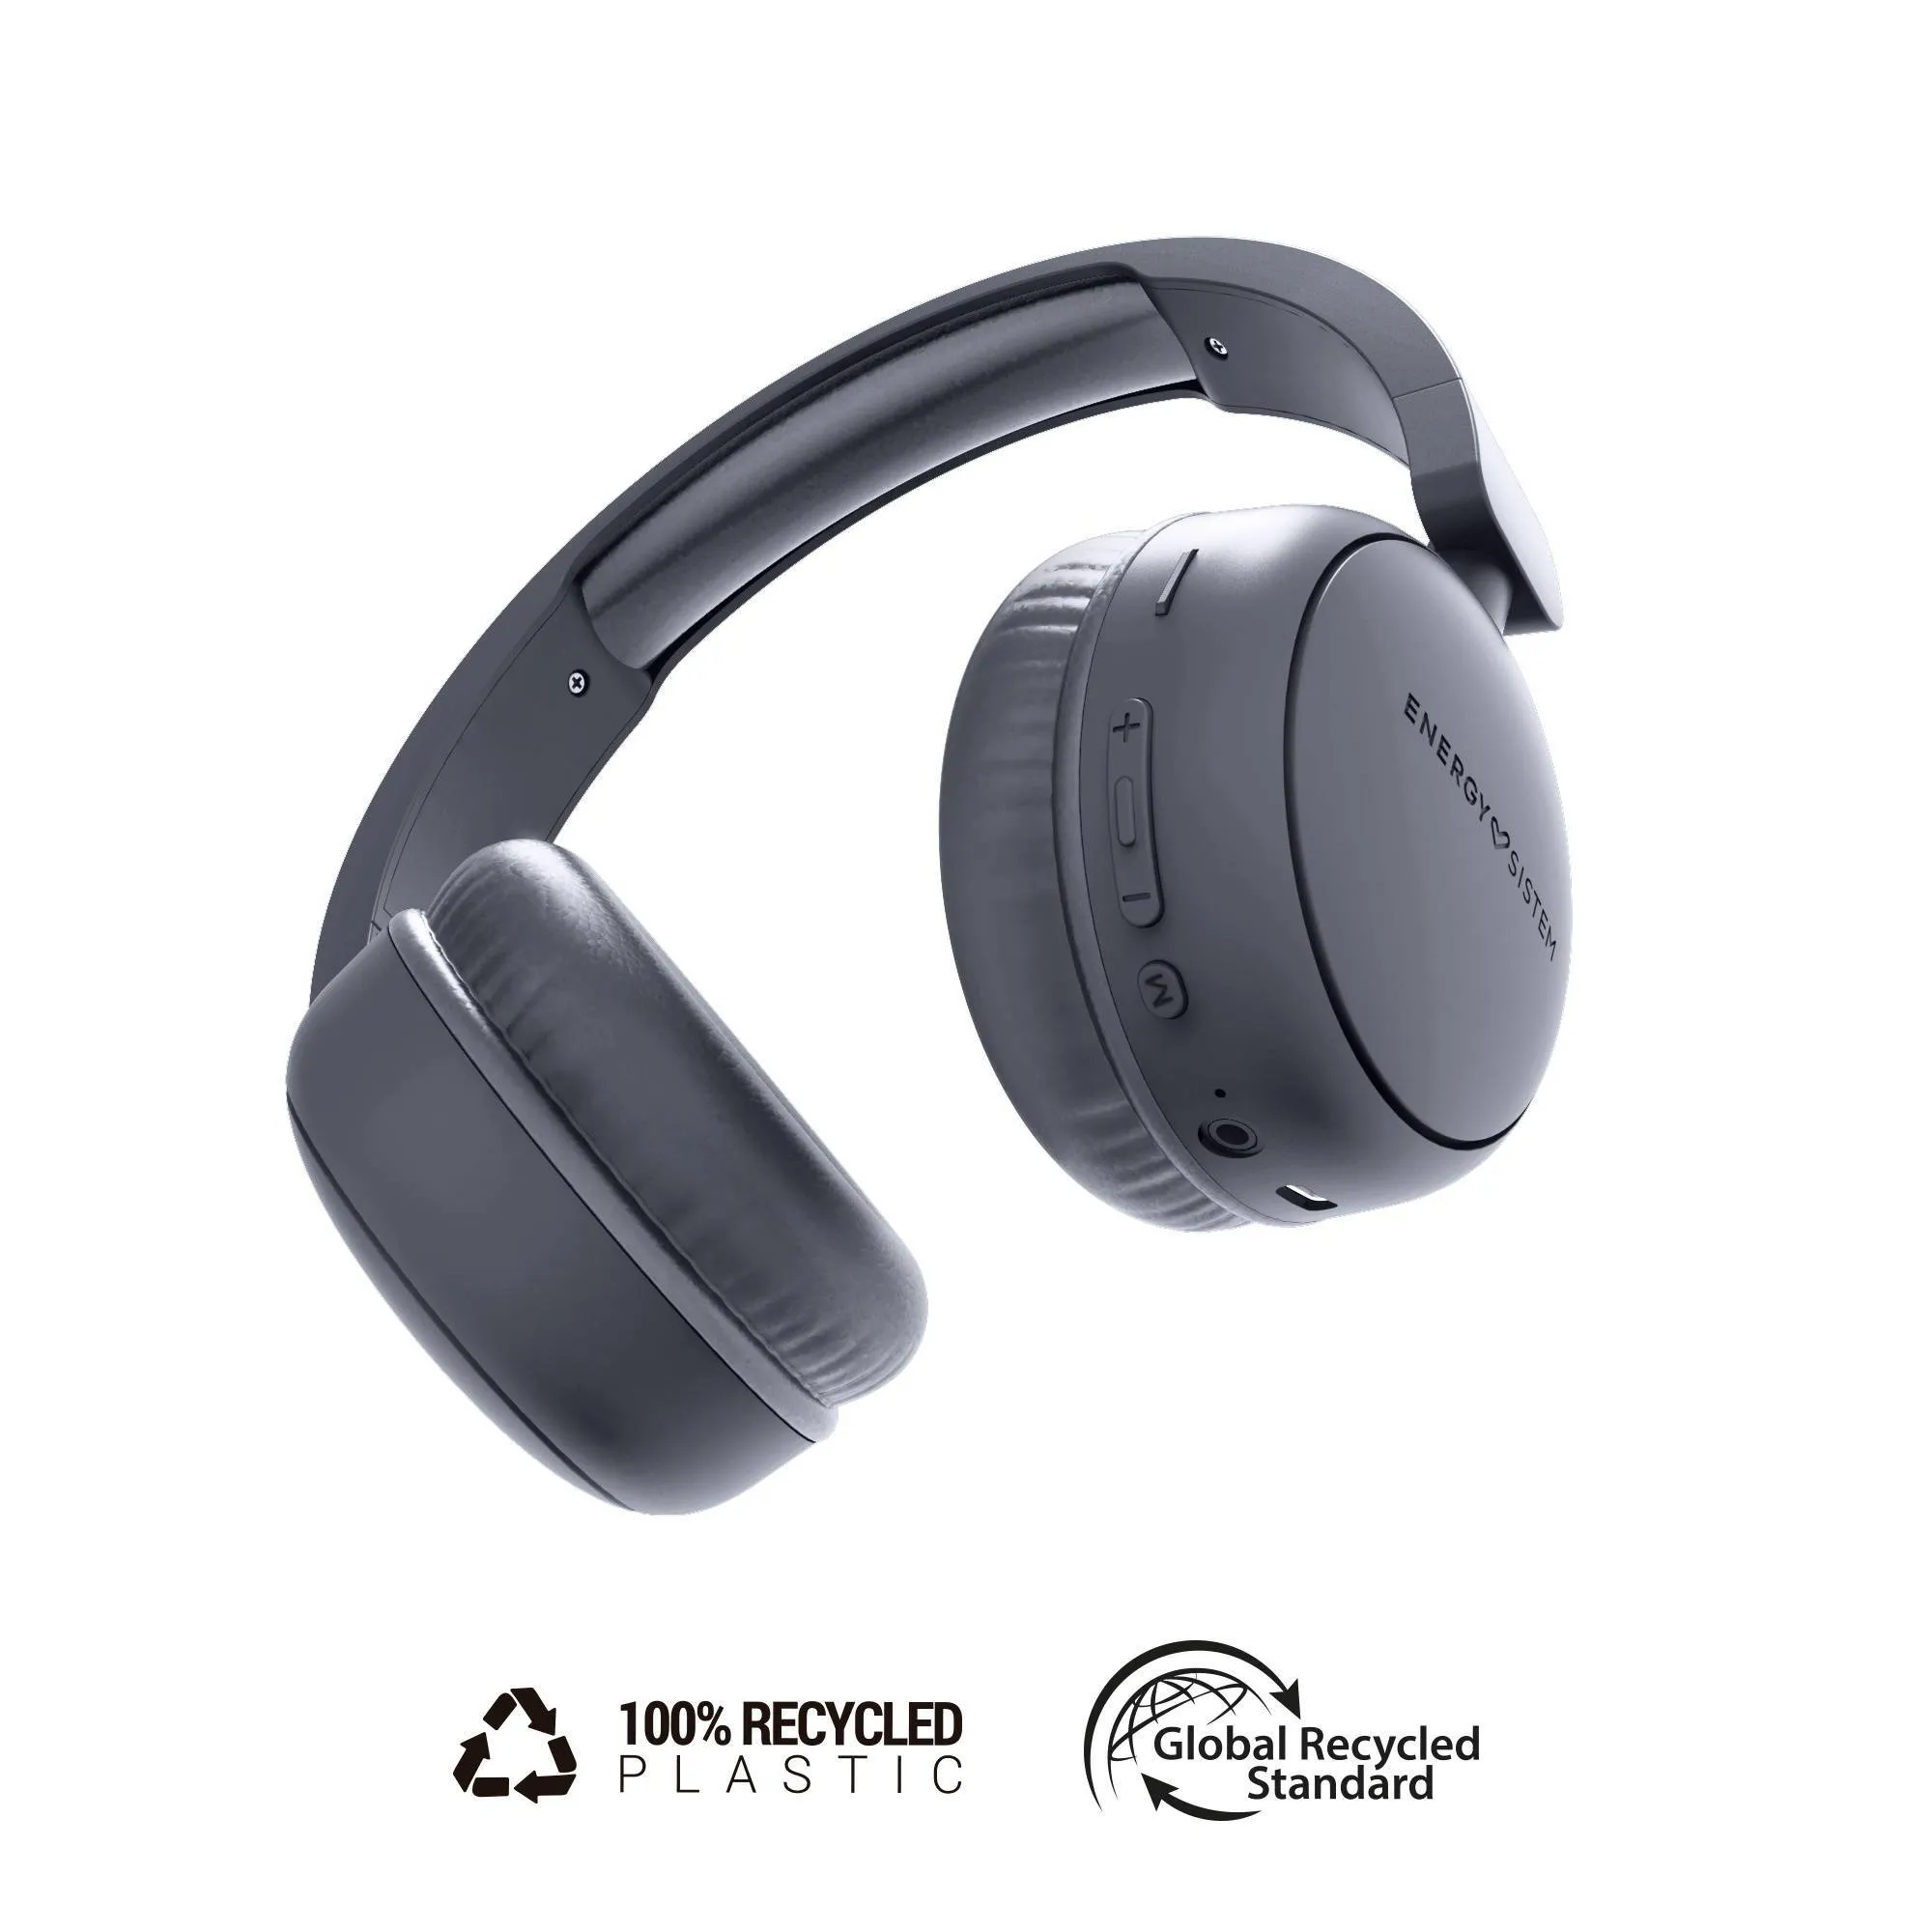 Auriculares Bluetooth HeadTuner fabricados con plástico 100% reciclado y hasta 16h de autonomía